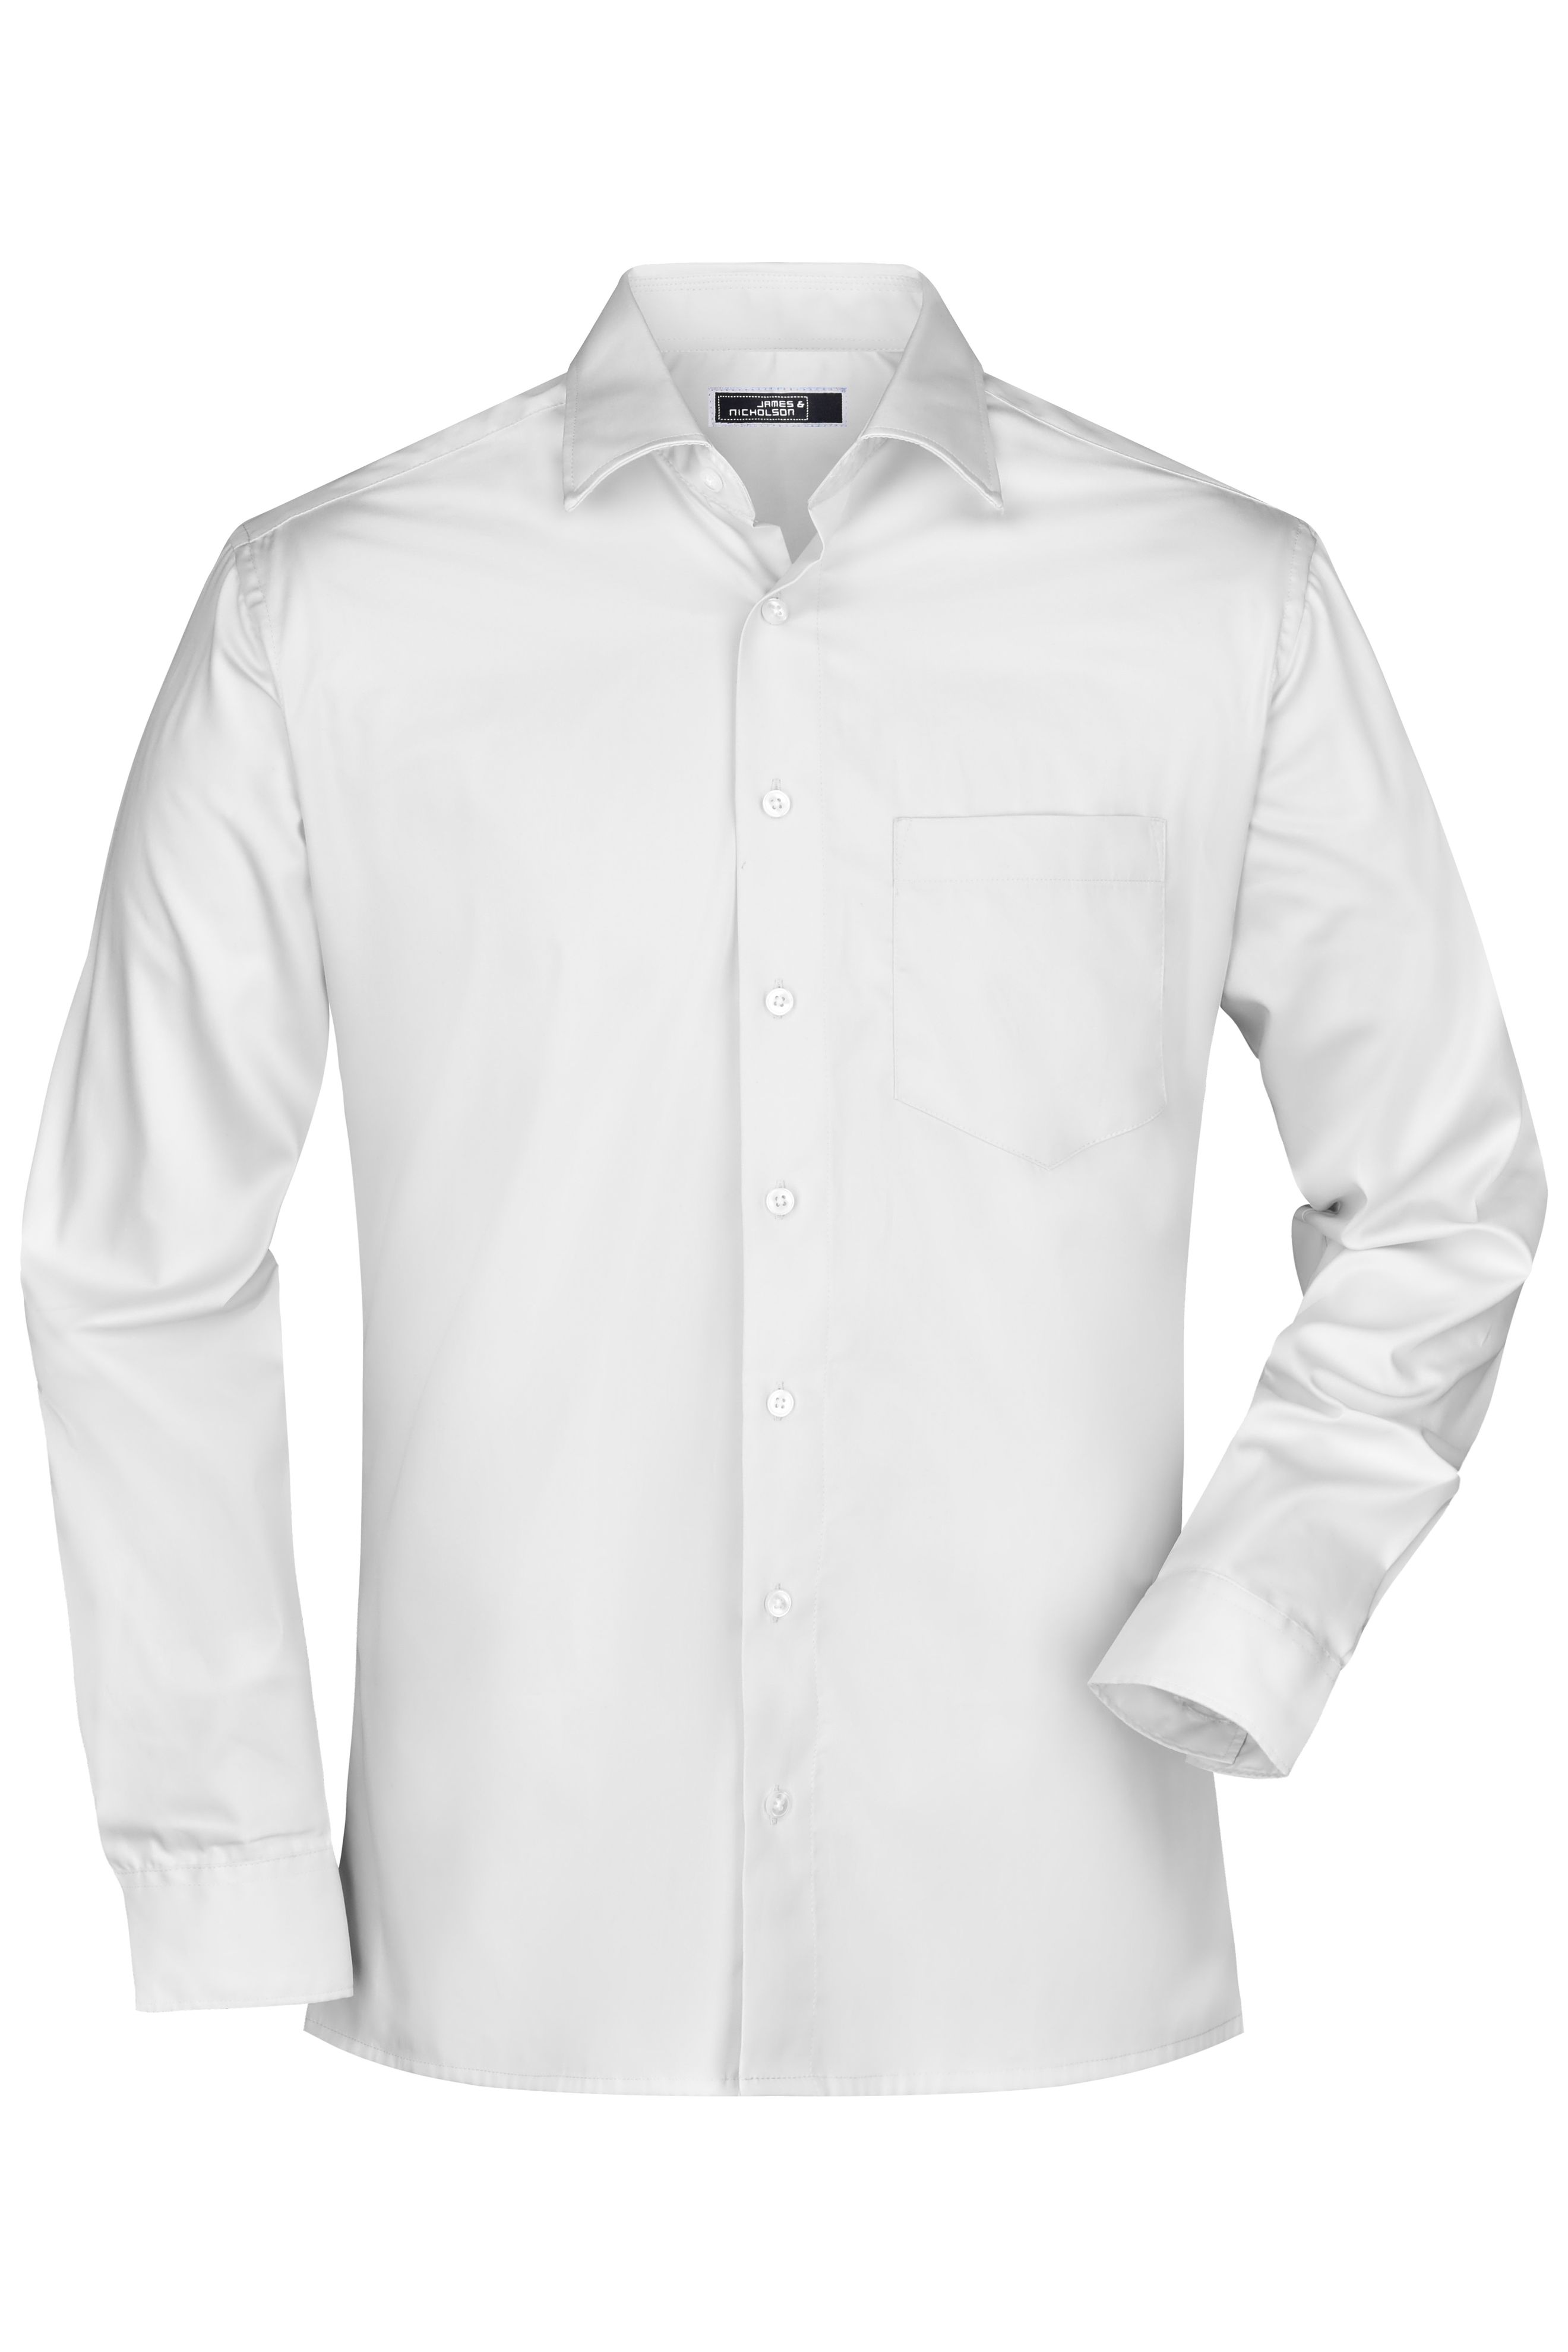 Men Men's Business Shirt Long-Sleeved White-Daiber